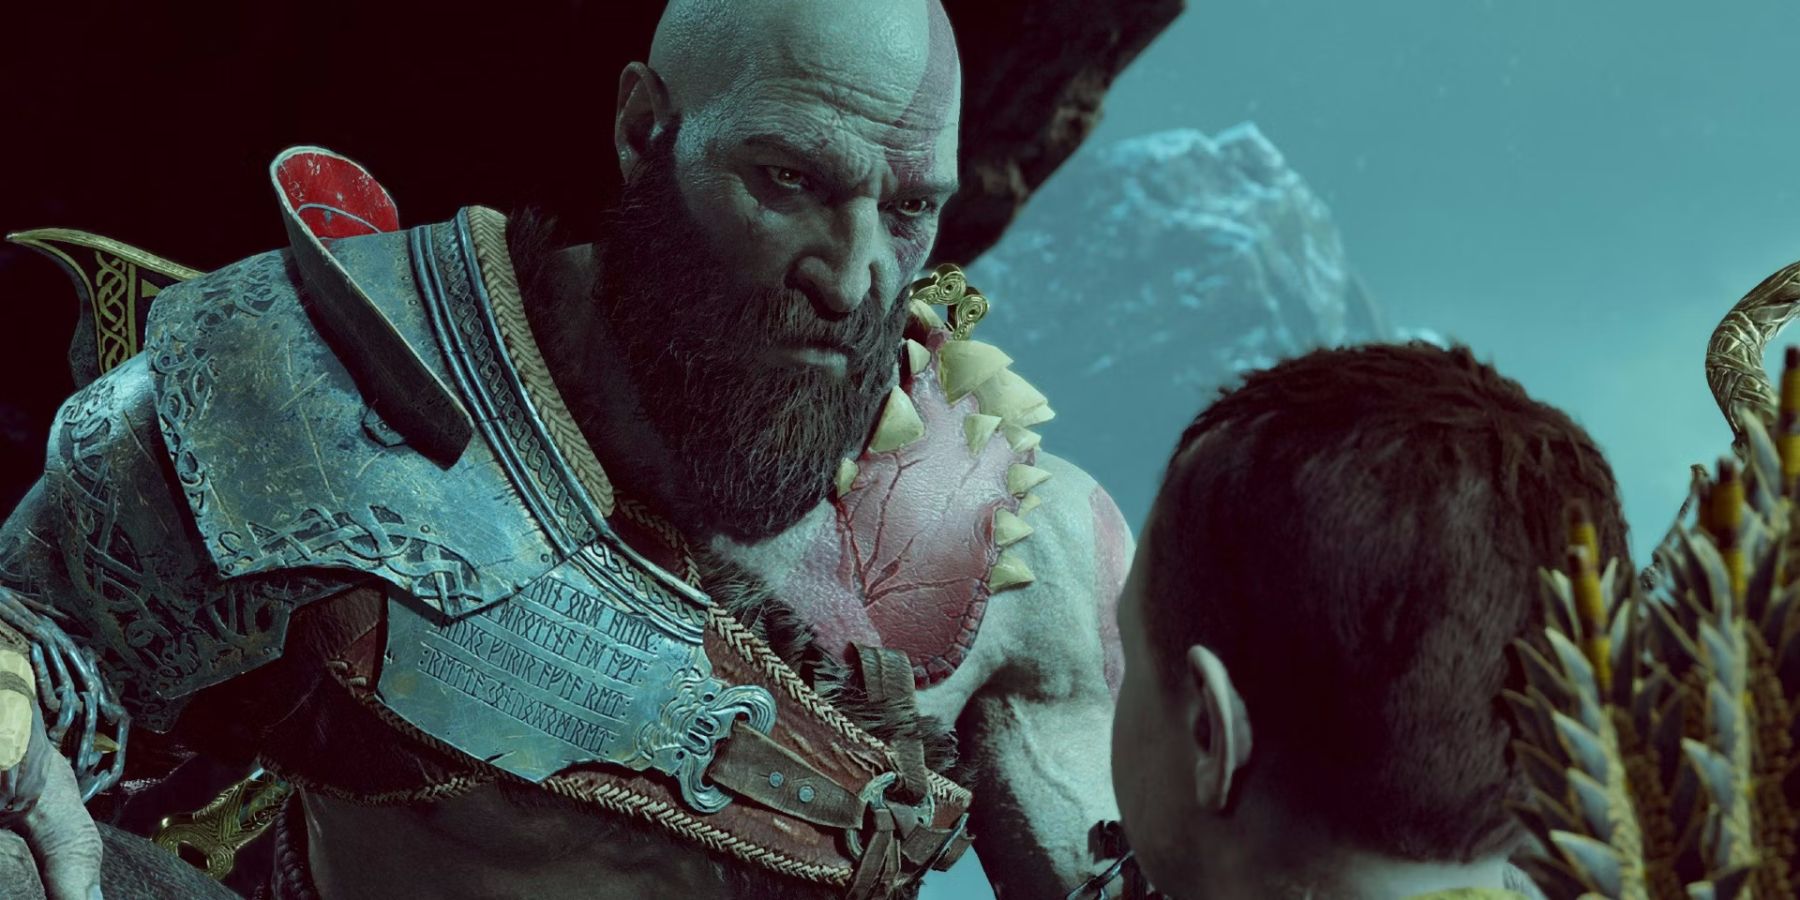 Kratos Yelling at Atreus